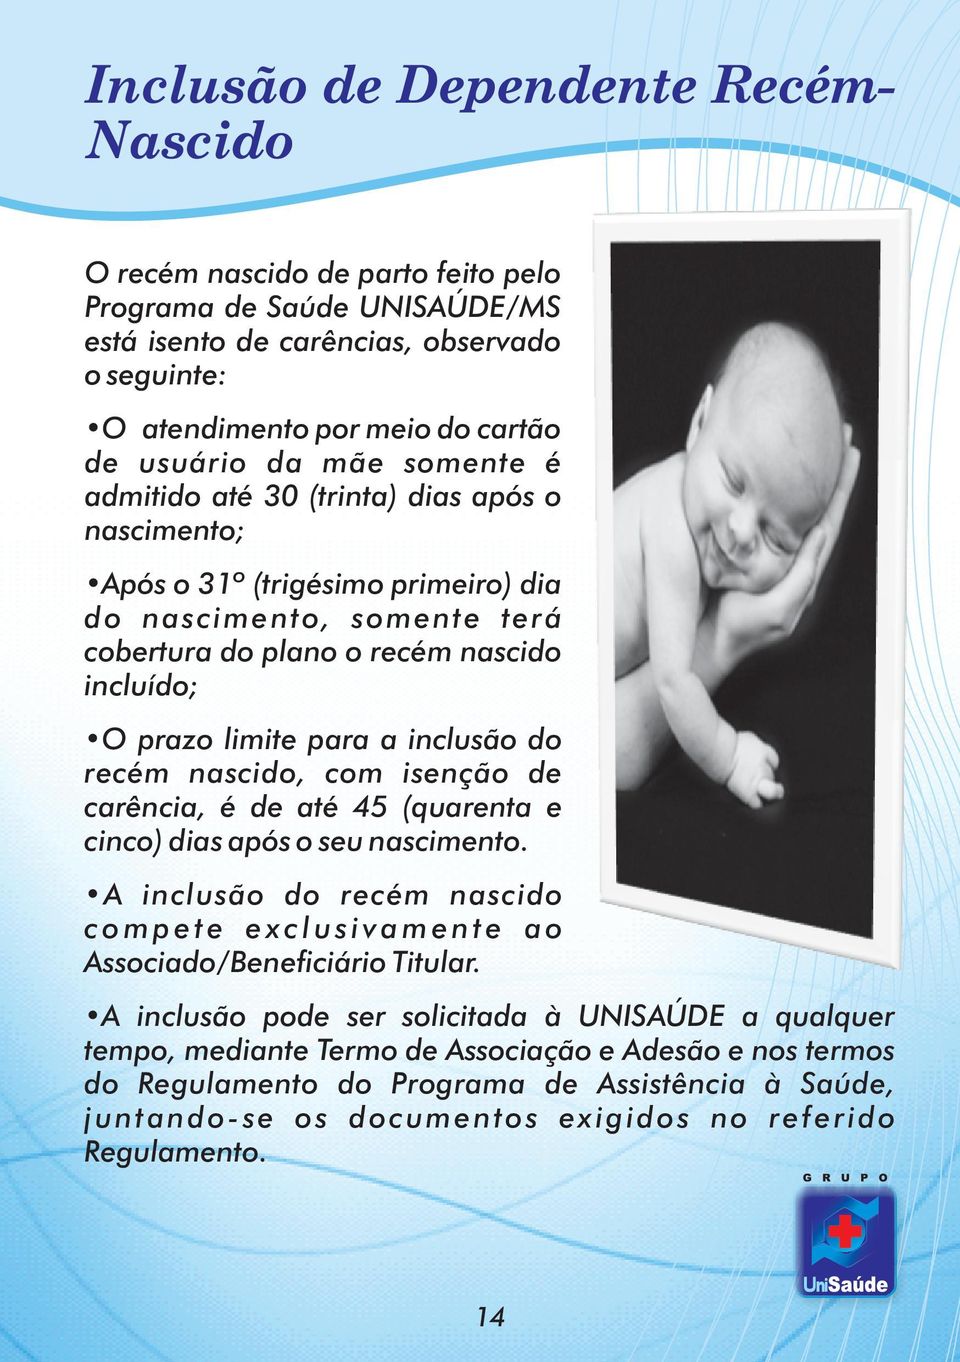 inclusão do recém nascido, com isenção de carência, é de até 45 (quarenta e cinco) dias após o seu nascimento.